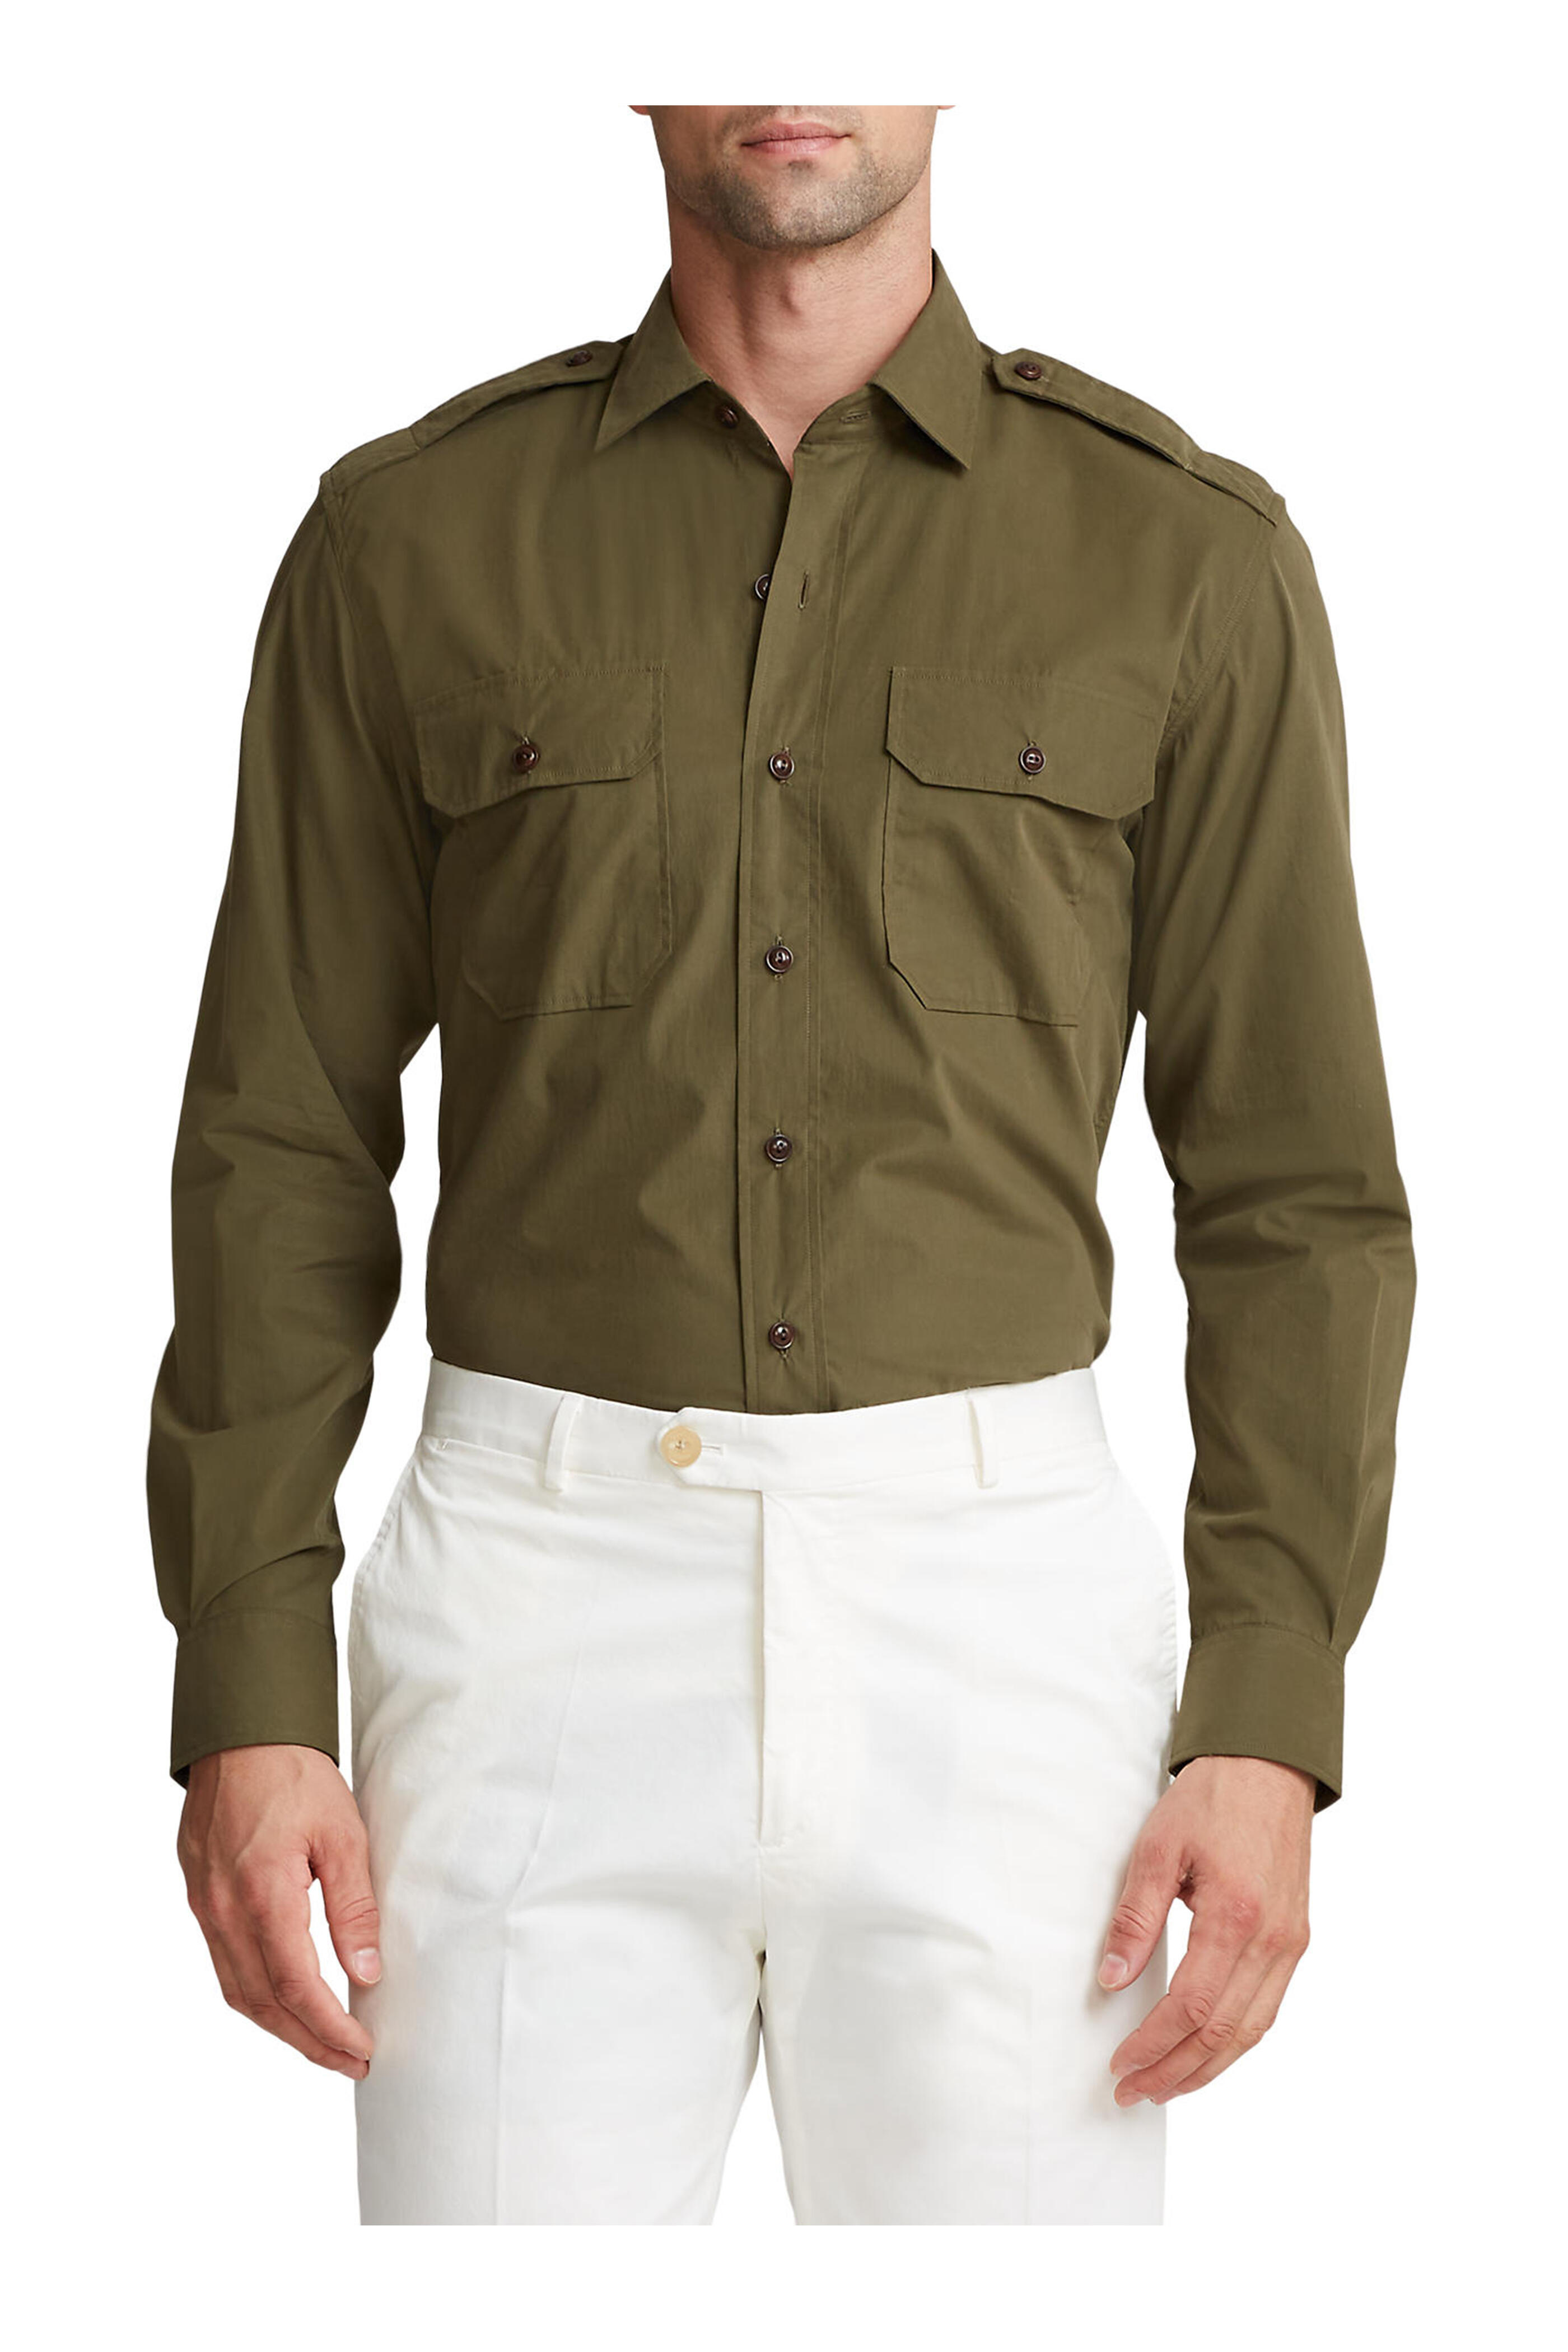 Ralph Lauren Pants & Jumpsuits | Ralph Lauren Khaki Pants Size 16 | Color: Tan | Size: 16 | Curvy_Kim's Closet